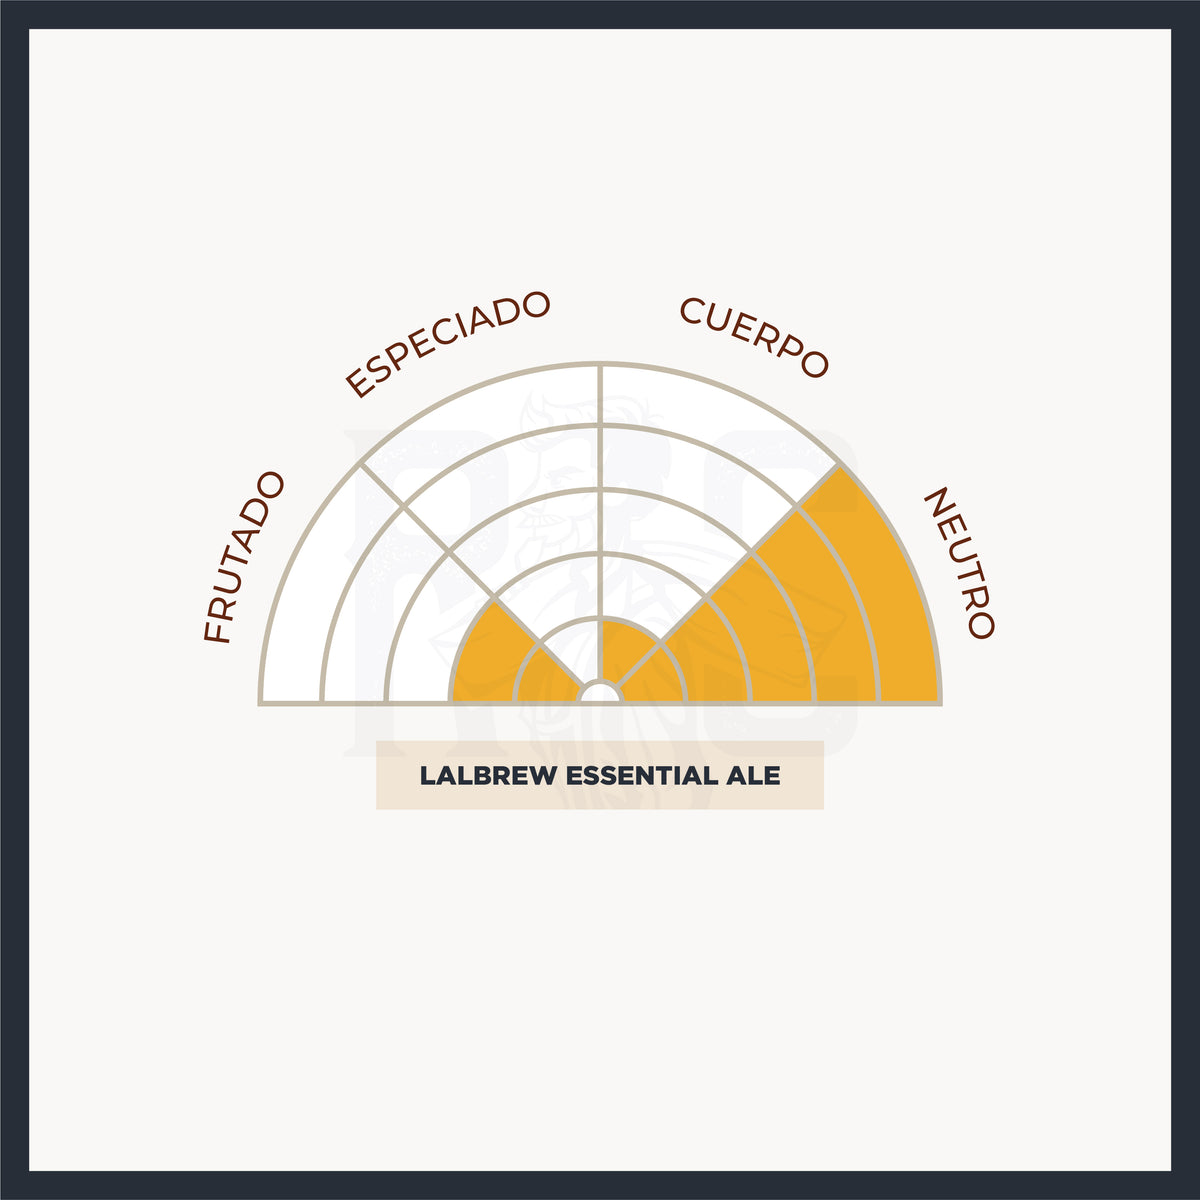 Tabla del perfil sensorial de la levadura Essential Ale de Lallemand